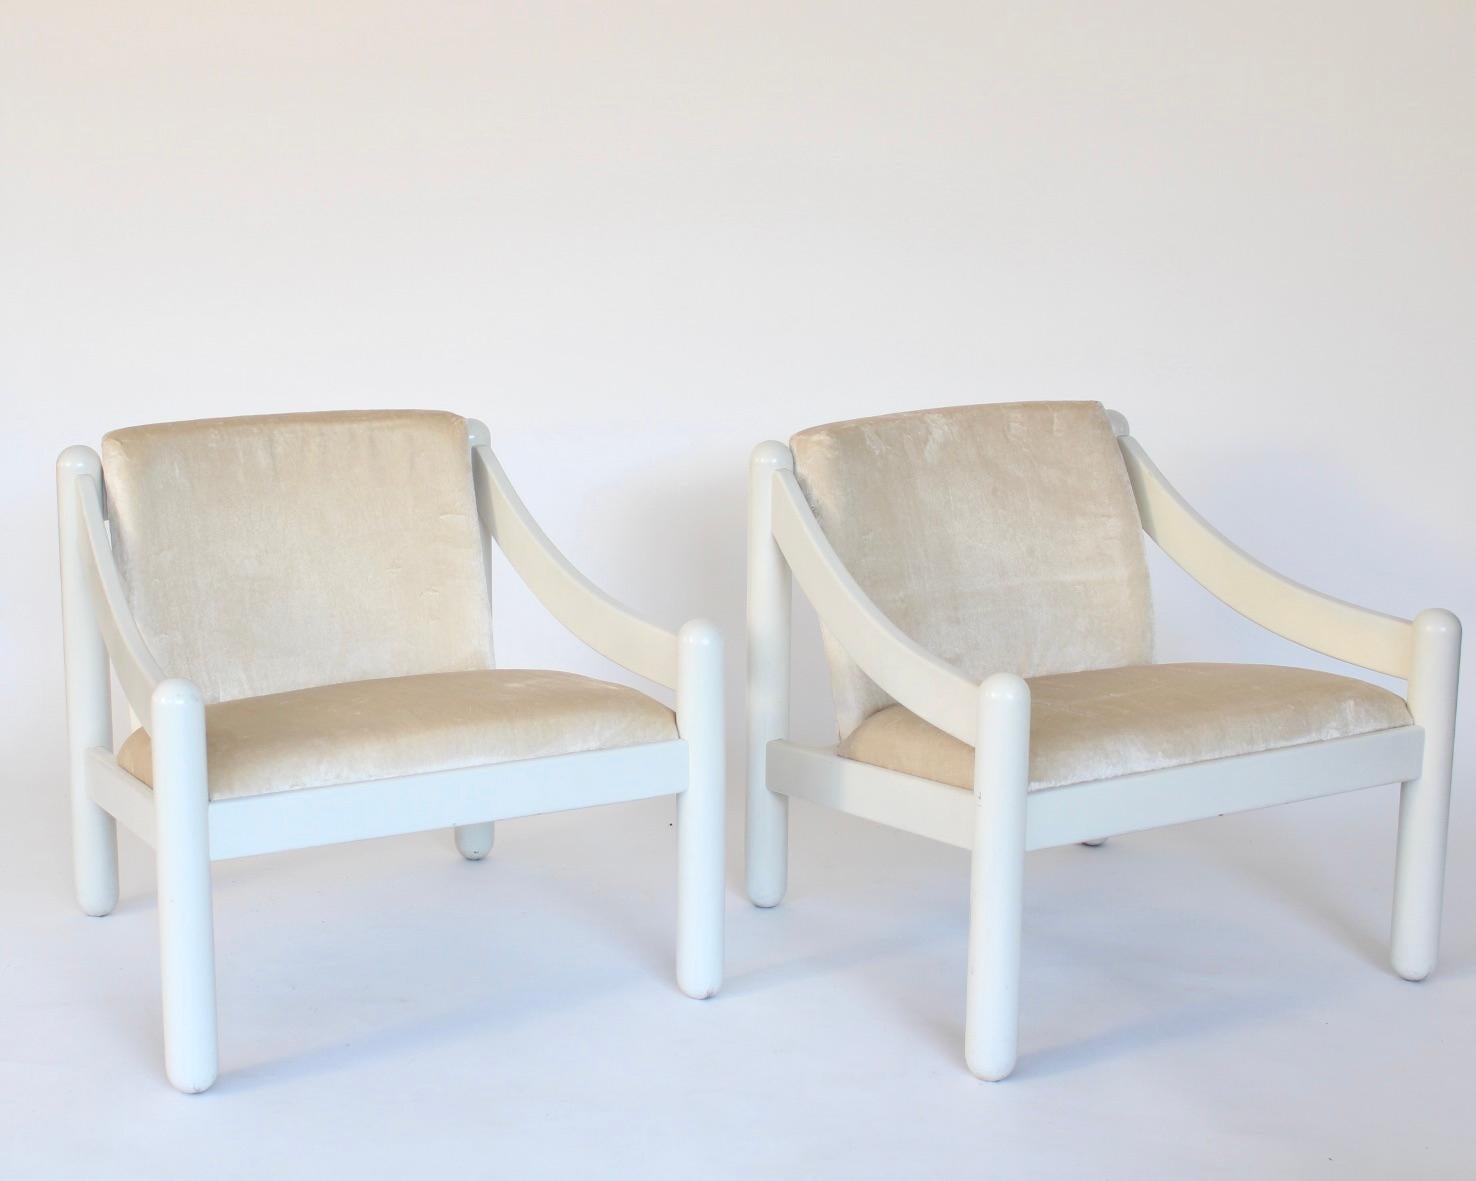 Vico Magistretti pour Cassina, paire de chaises longues Carimate, en bois de hêtre laqué blanc rare et velours crème aux tons chauds, Italie, conçue vers 1960.  La chaise longue Carimate est l'une des chaises les plus célèbres de Vico Magistretti. À